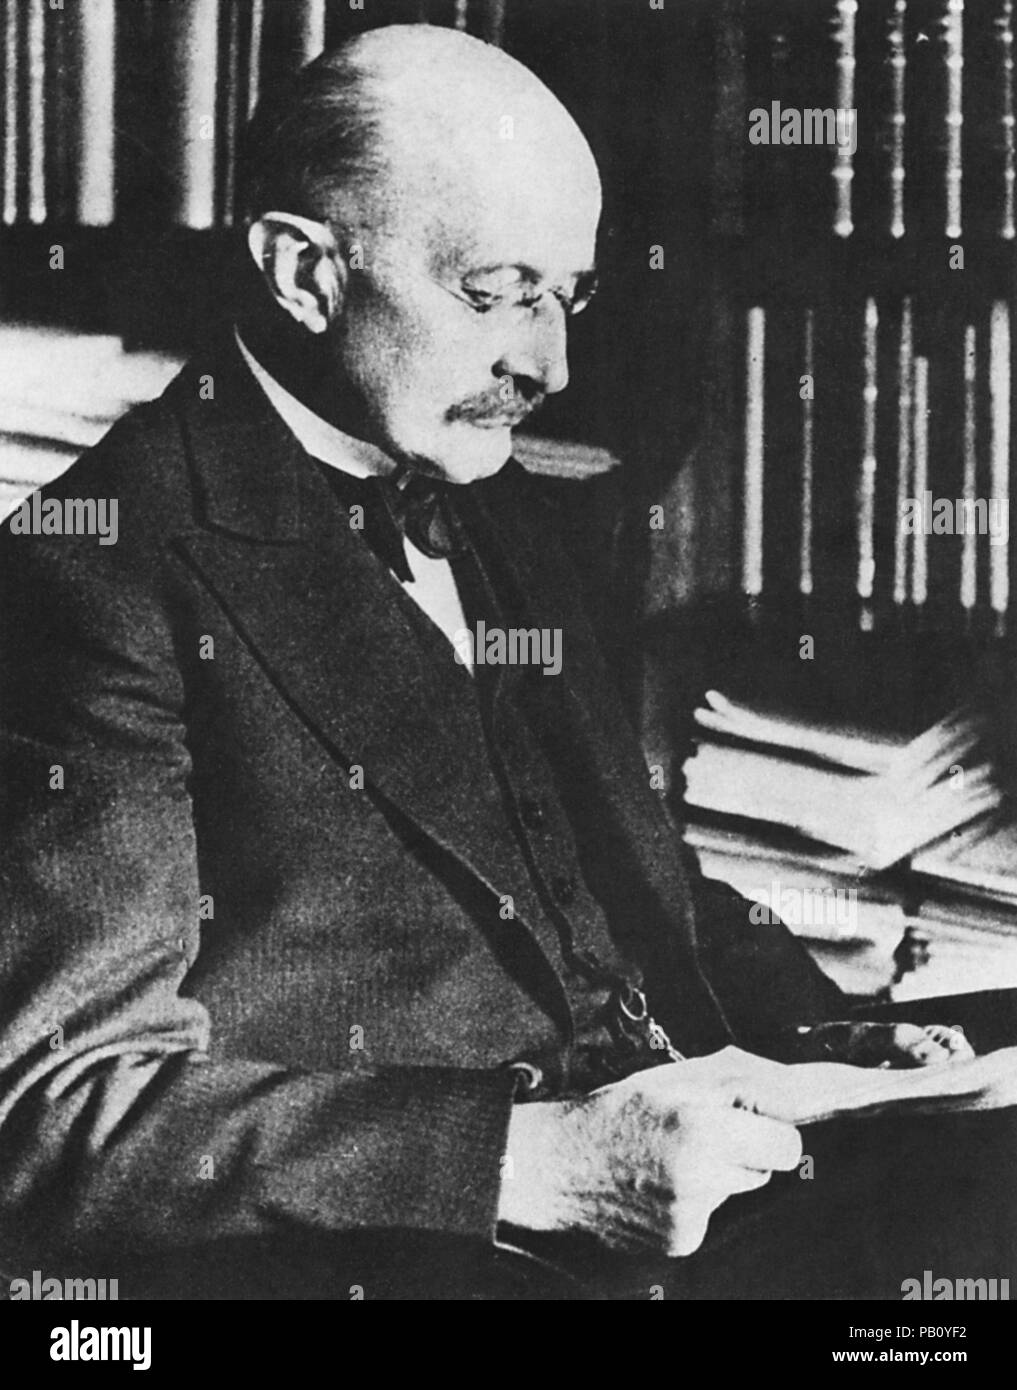 Max Karl Ernst Ludwig Planck (1858-1947), tedesco fisico teorico e vincitore del Premio Nobel in fisica, Ritratto, 1910's Foto Stock